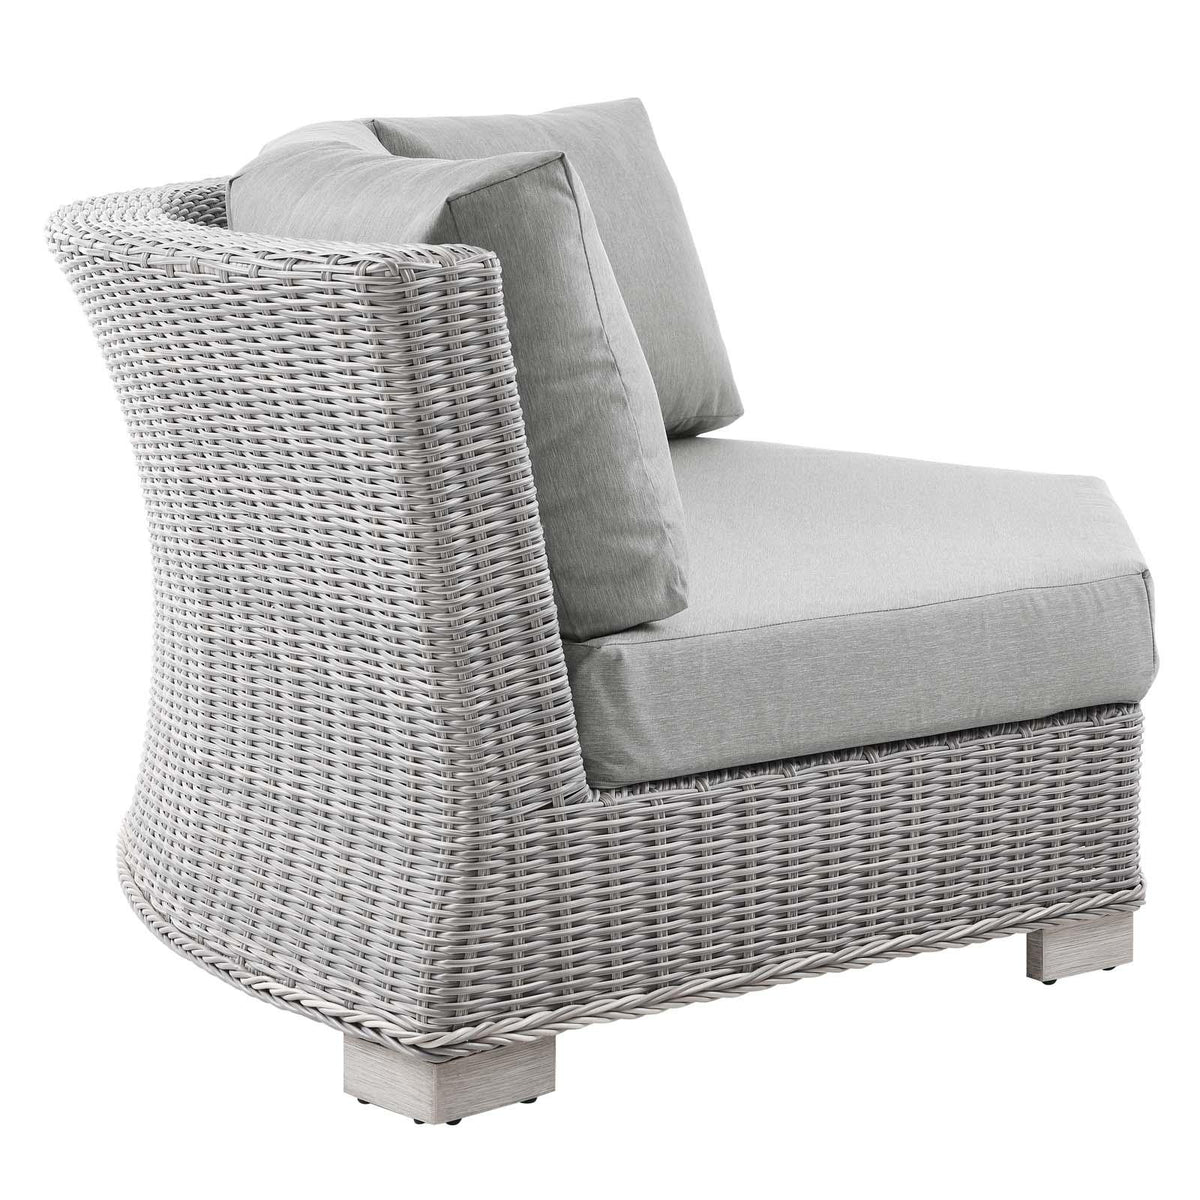 Modway Furniture Modern Conway Outdoor Patio Wicker Rattan Round Corner Chair - EEI-4844